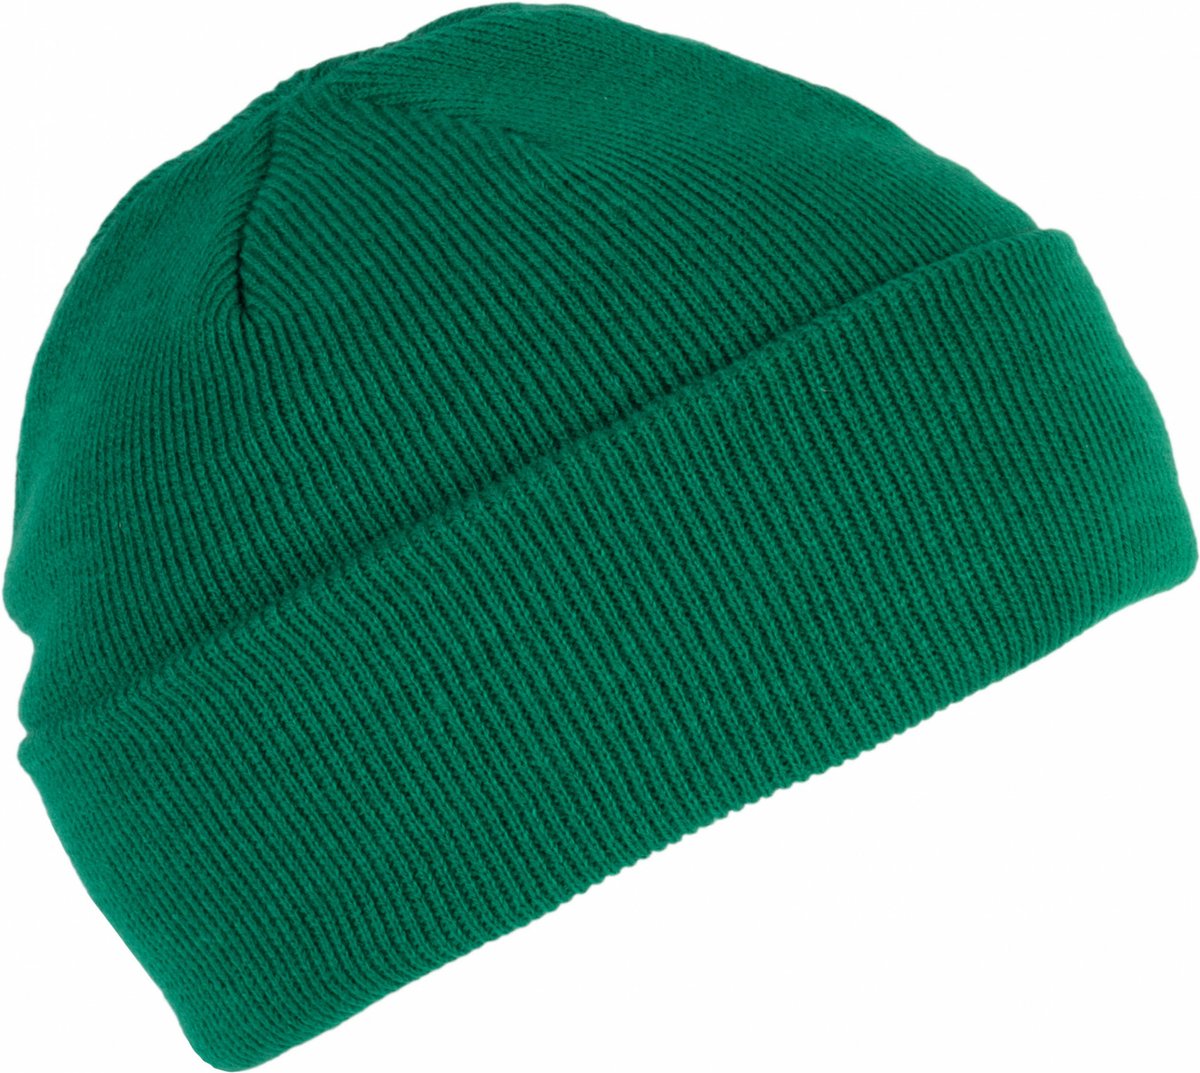 K-up Hats Wintermuts Beanie Yukon - groen - heren/dames - sterk/zacht/licht gebreid 100% Acryl - Dames/herenmuts